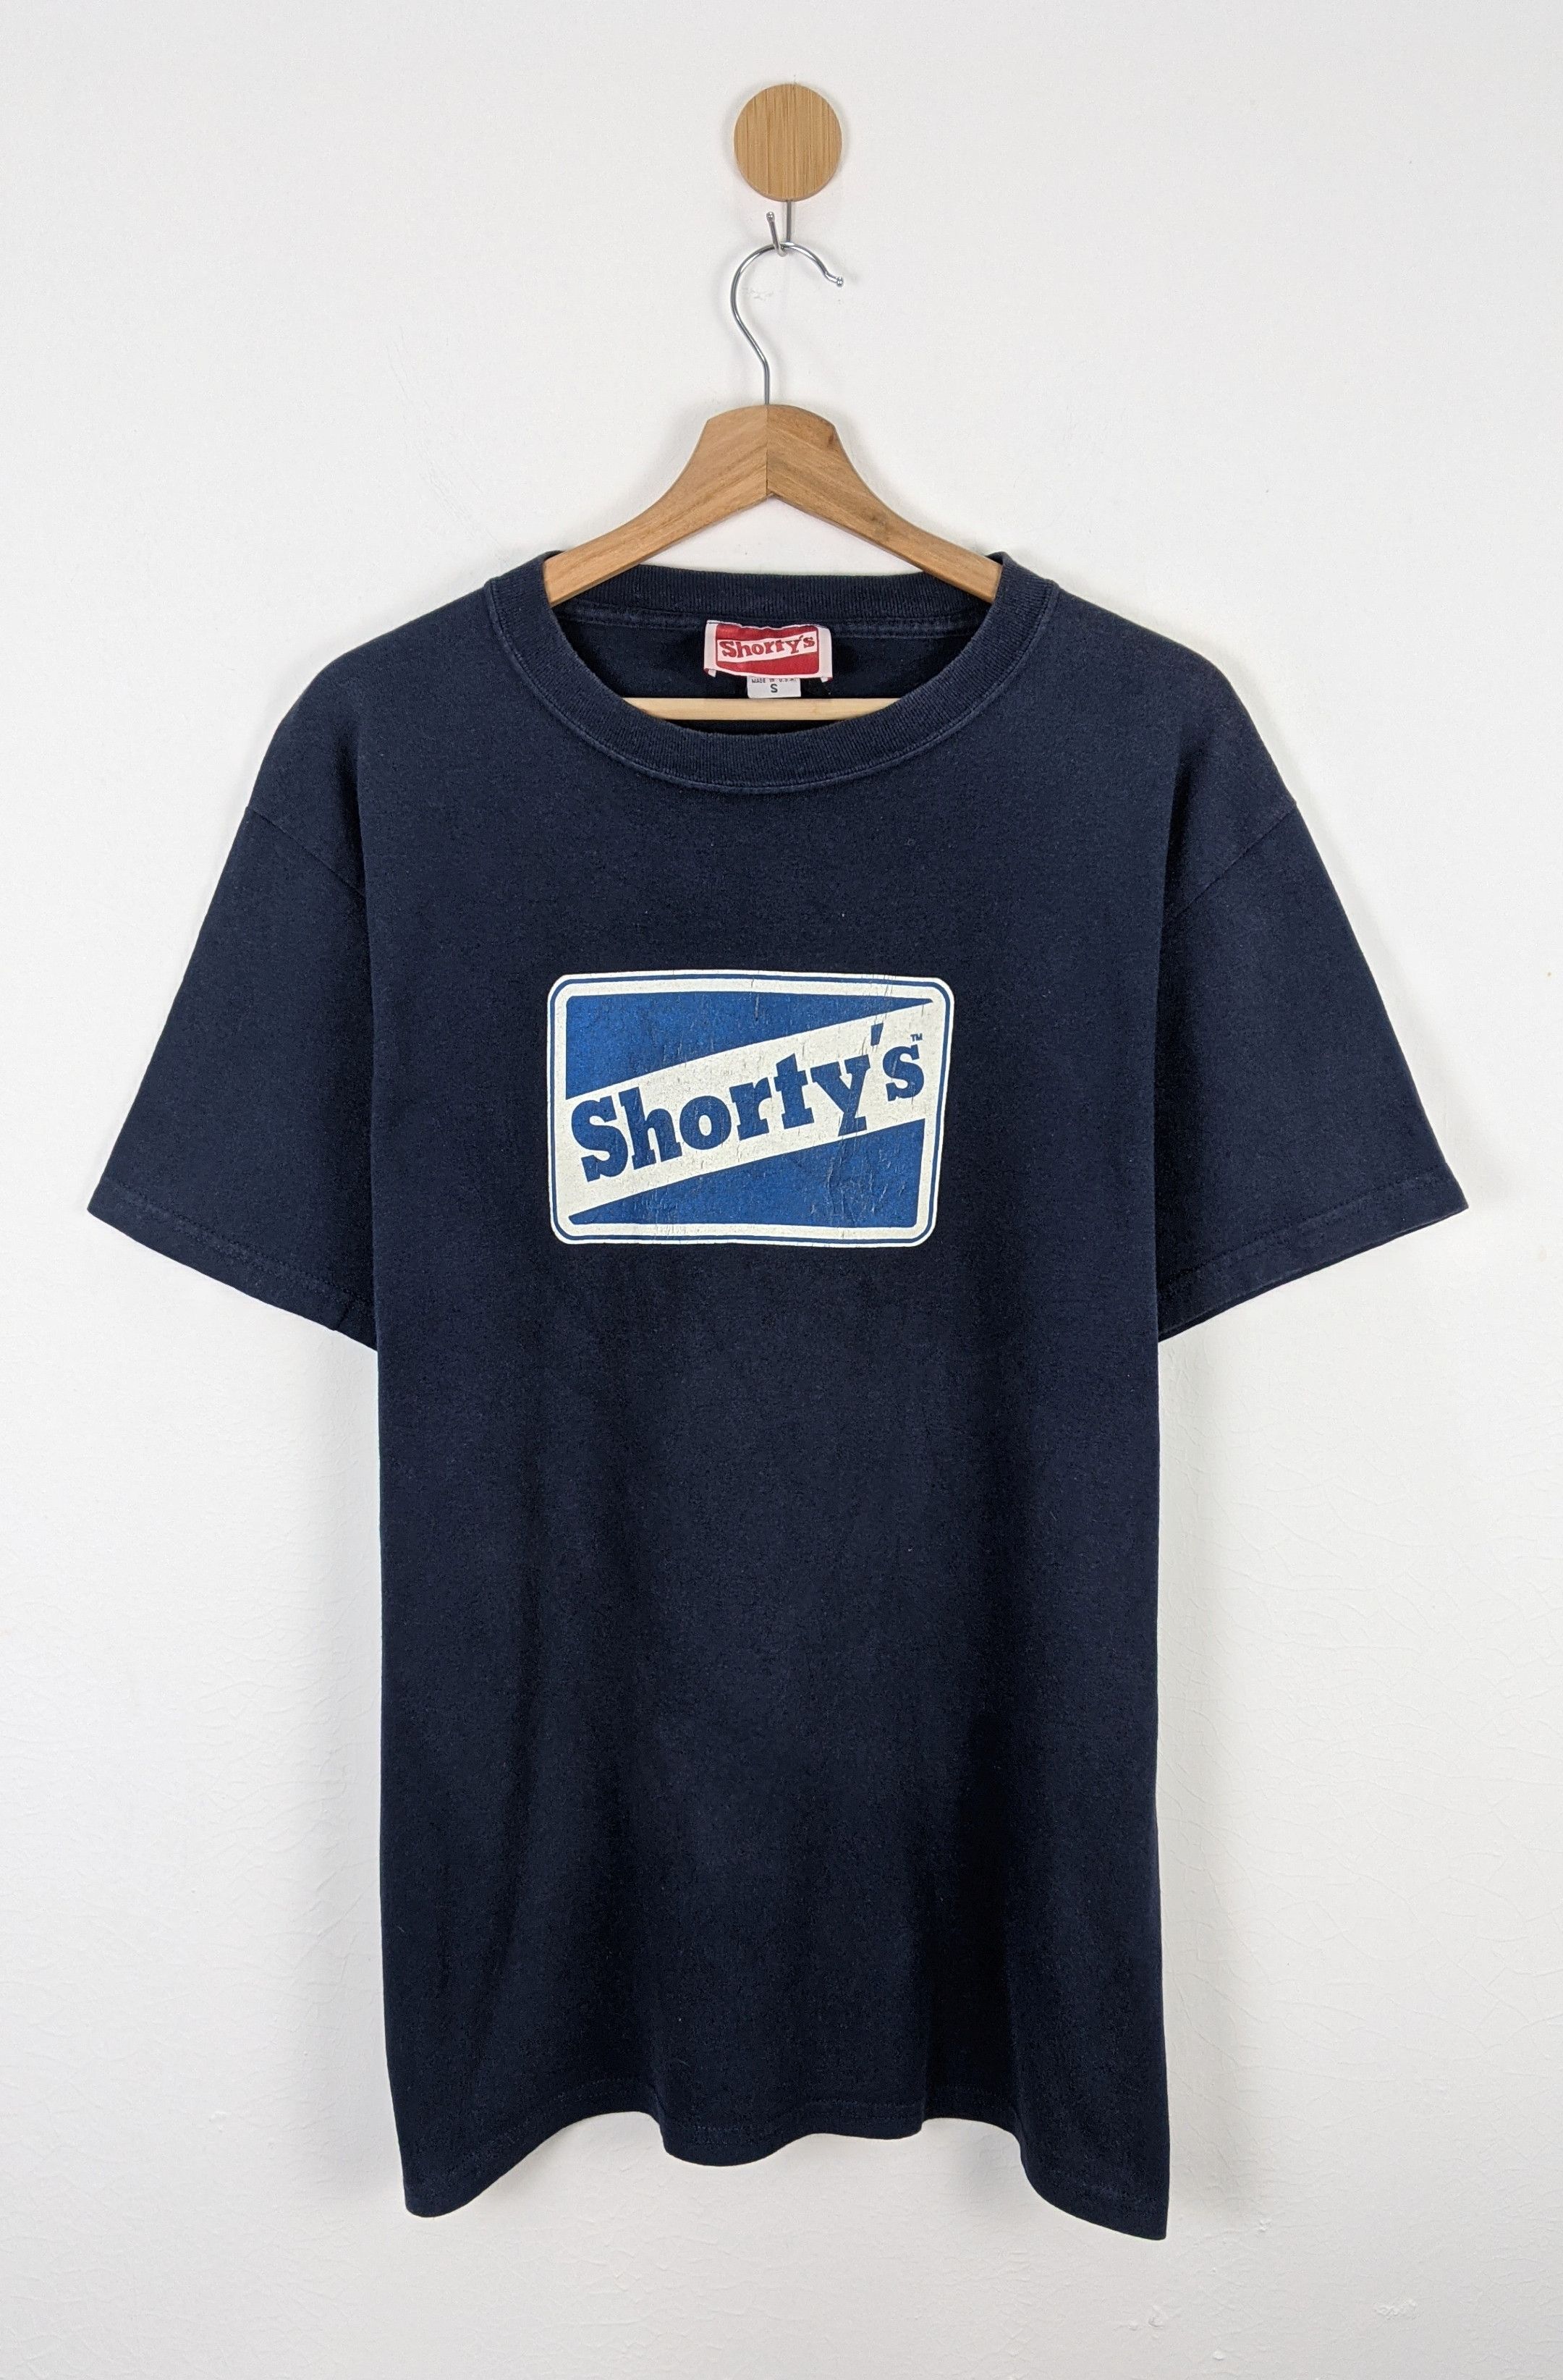 Shorty's skateboard shirt